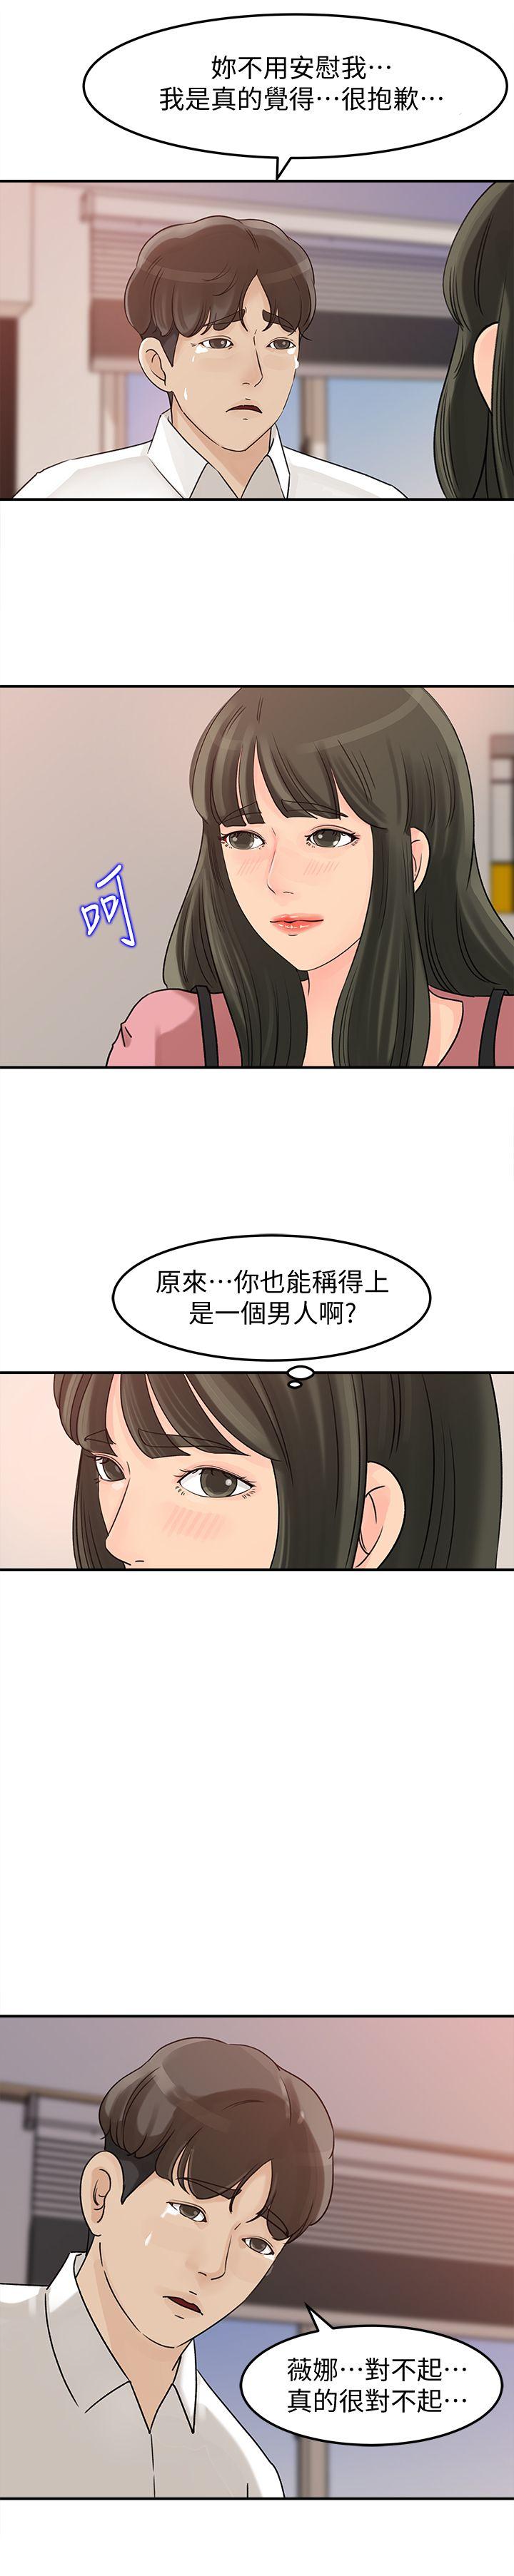 《媳妇的诱惑》漫画 第15话-慾望败露